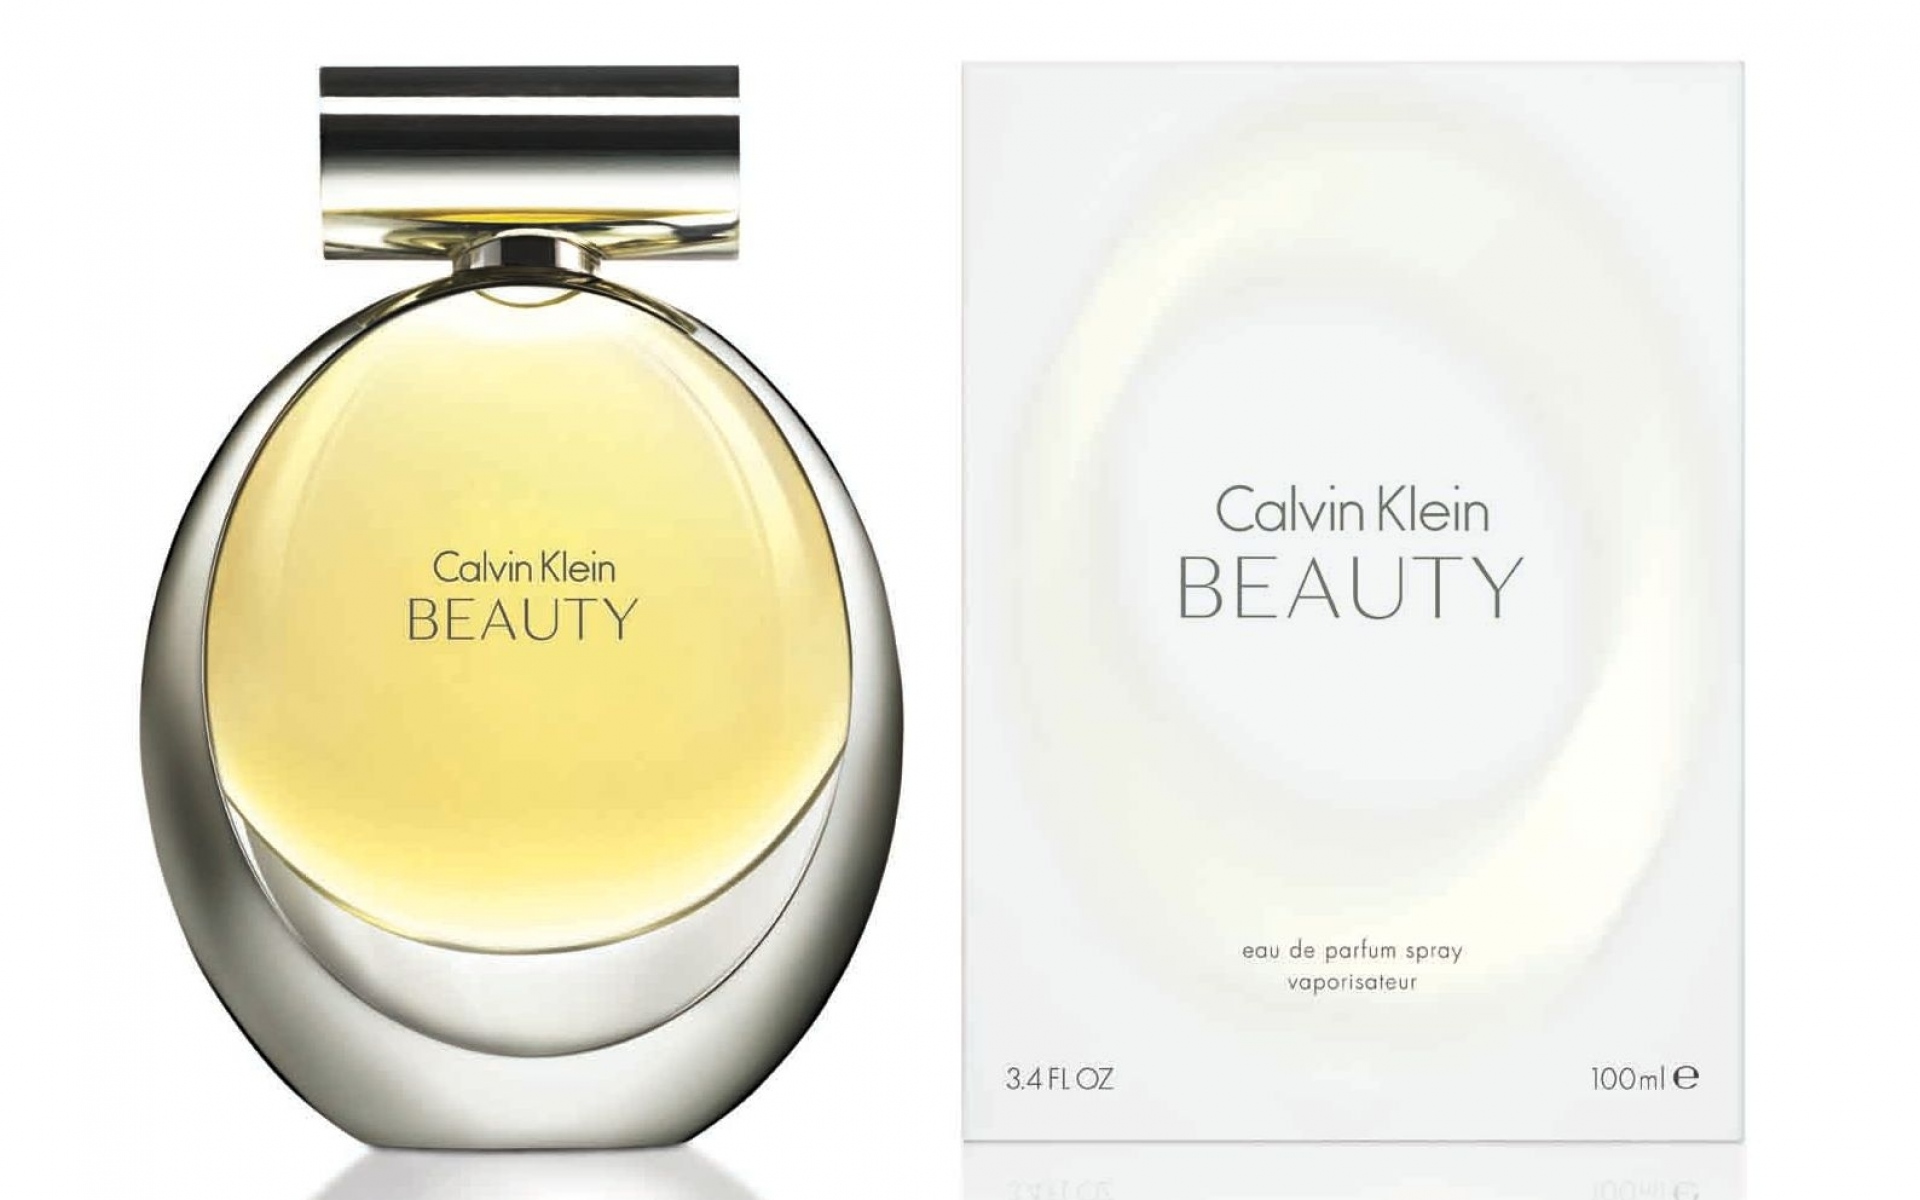 Картинки Calvin Klein, красота, парфюм, аромат фото и обои на рабочий стол